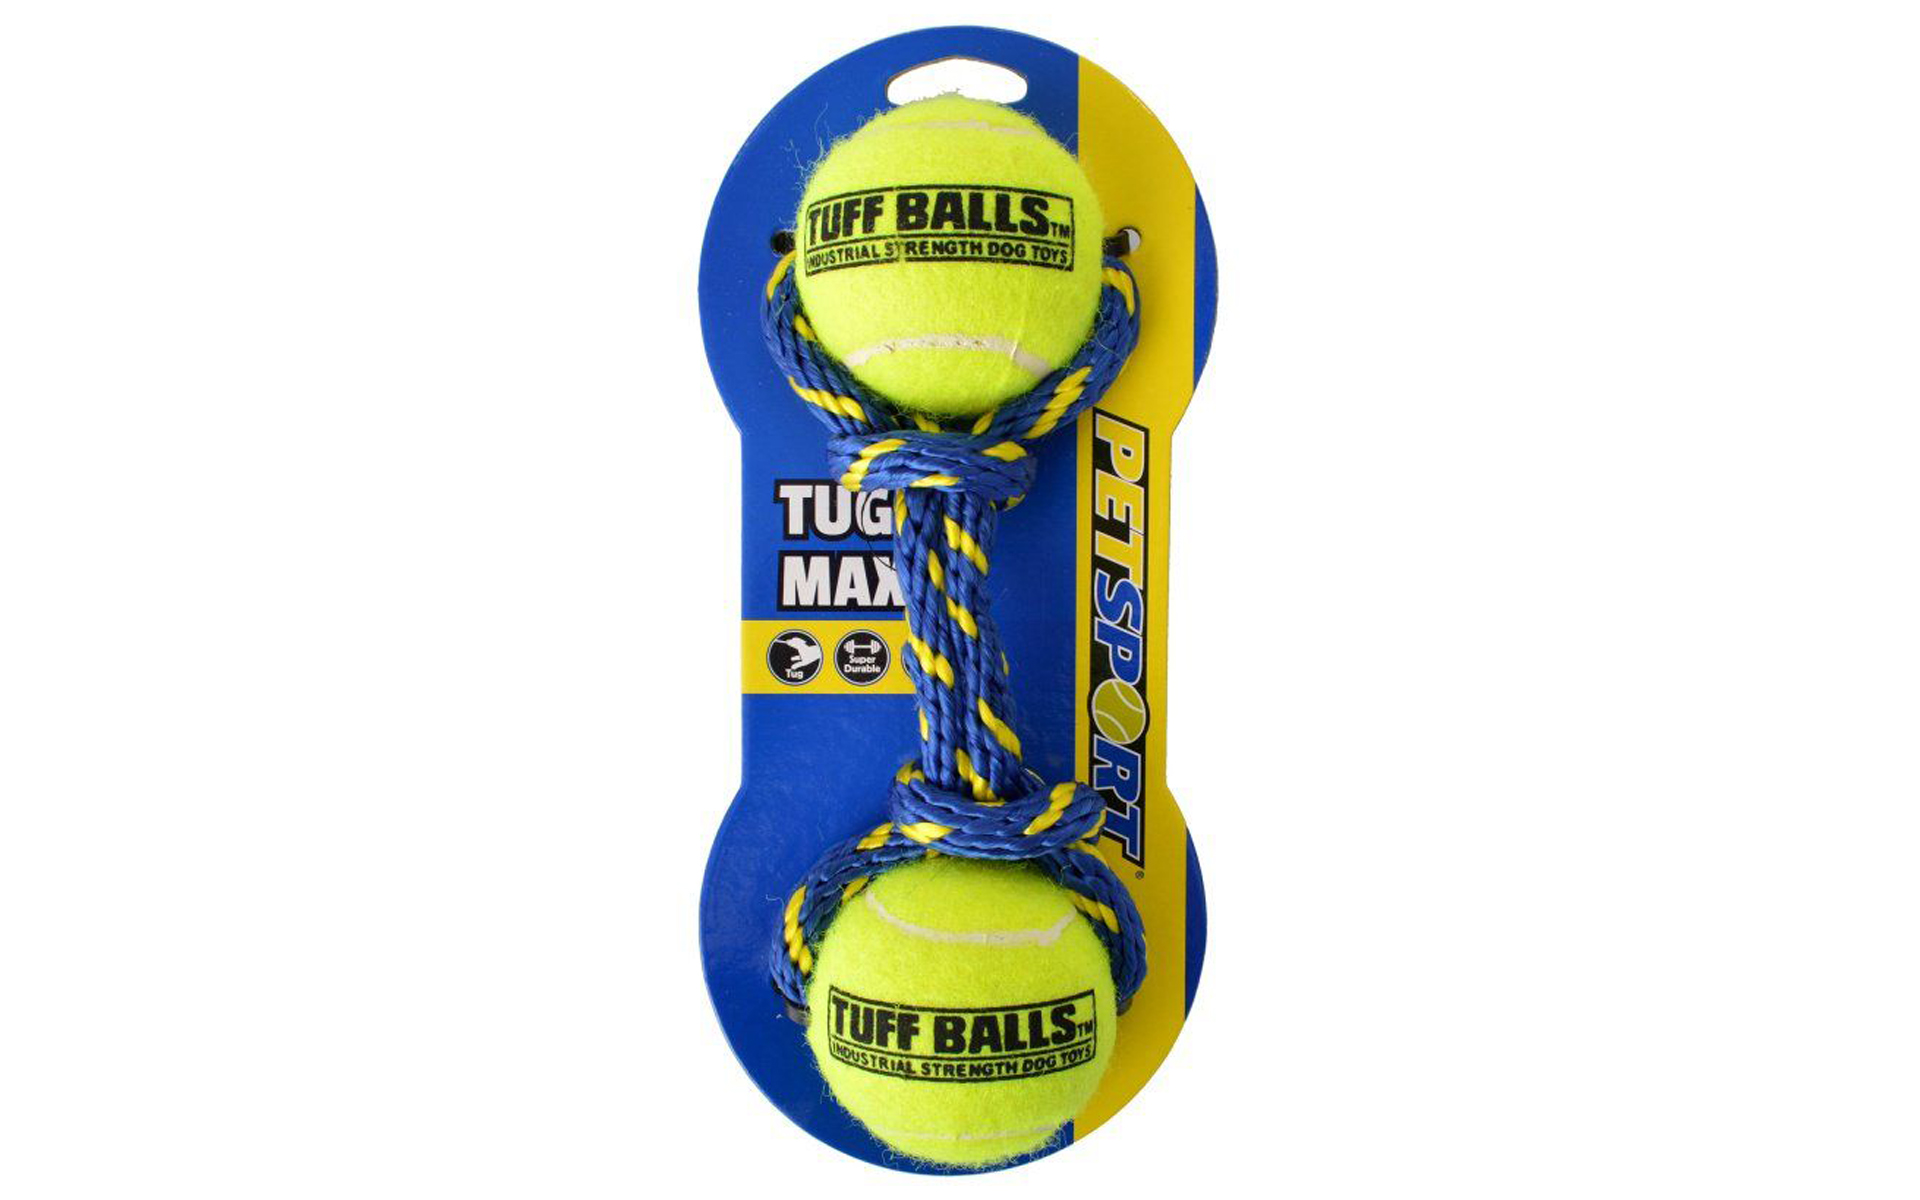 Tug Max Tuff Balls Dog Toy